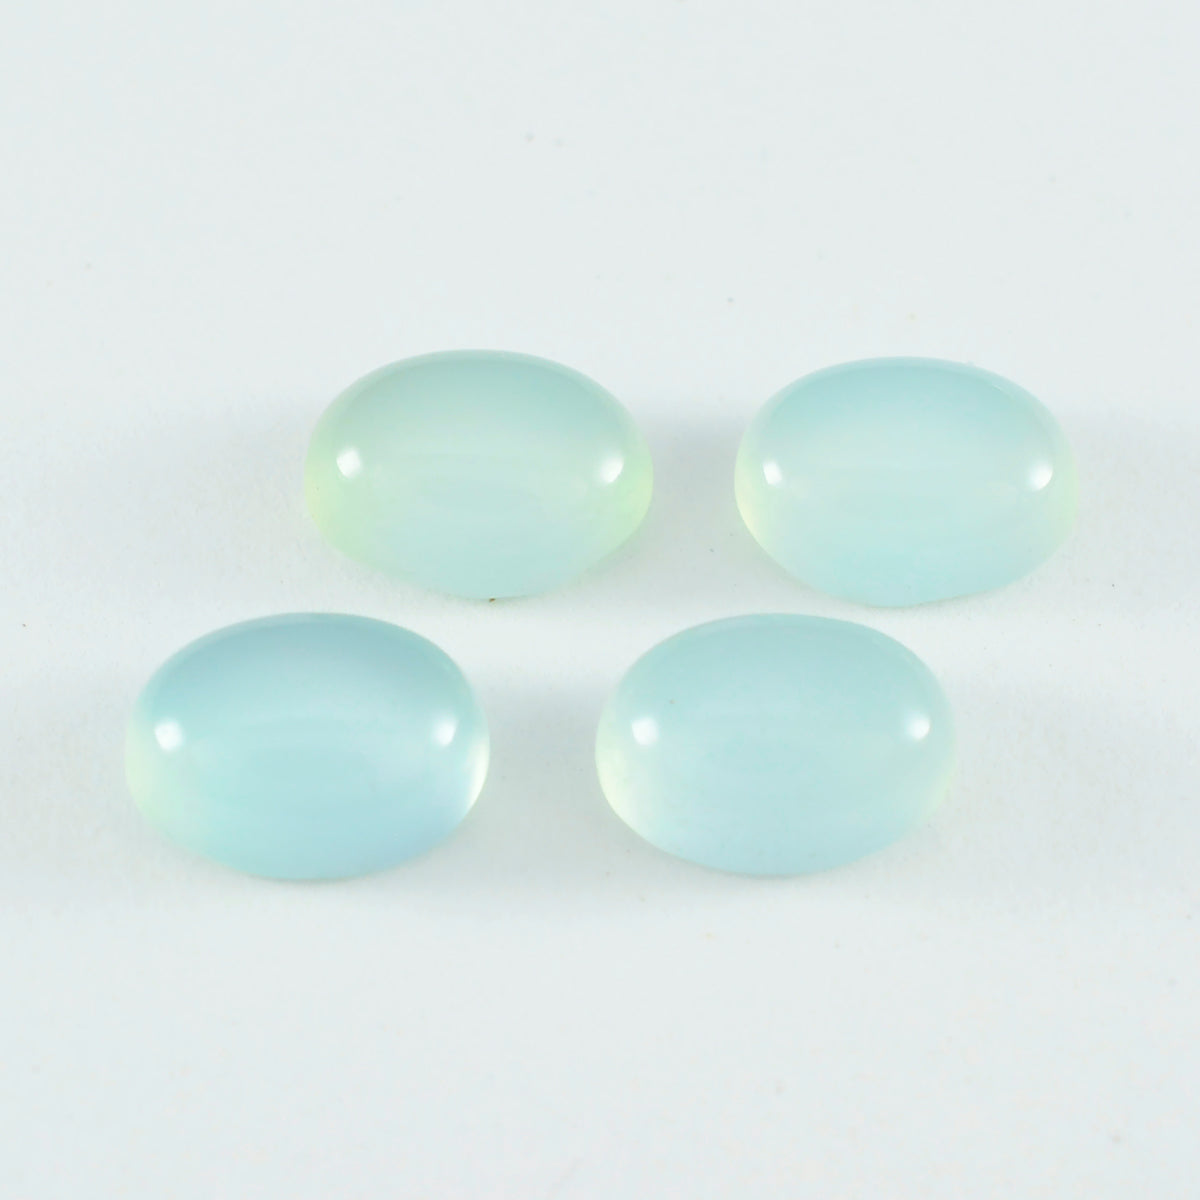 Riyogems 1pc aqua calcédoine cabochon 5x7 mm forme ovale belle qualité gemme